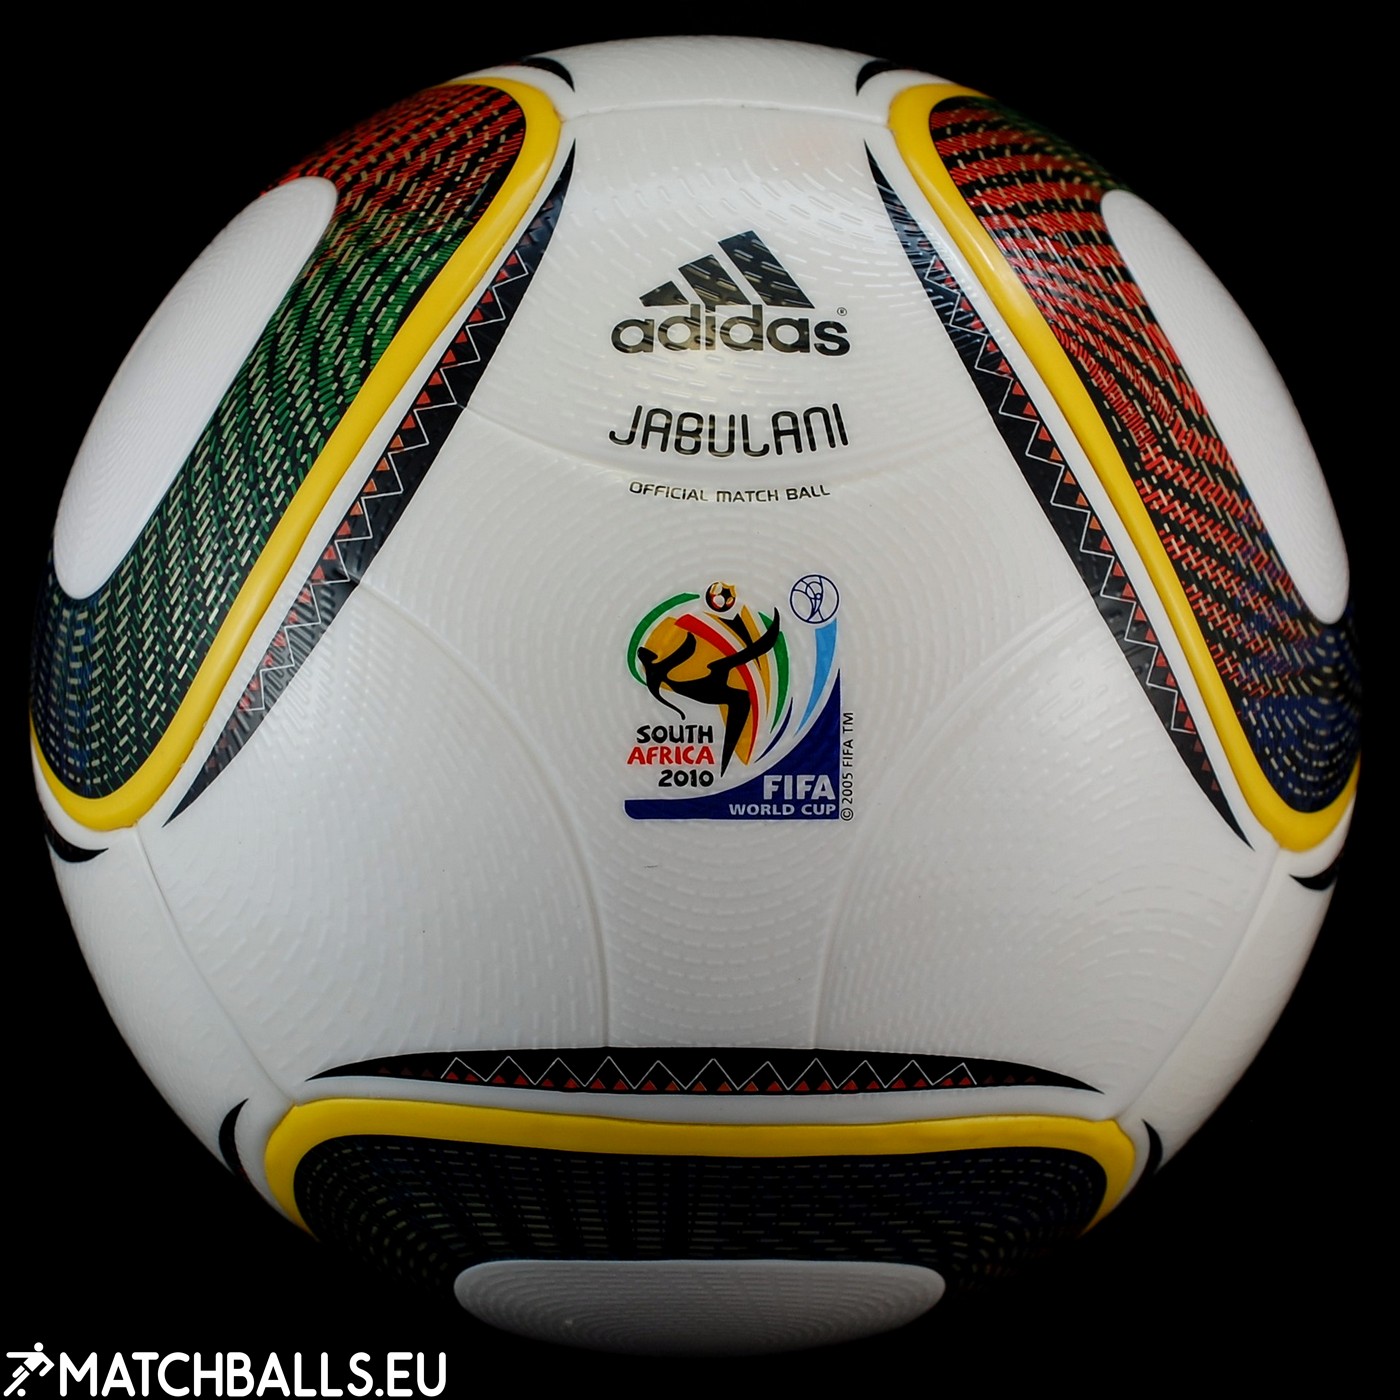 Adidas Jabulani Ball - Regular (OMB) | matchballs.eu